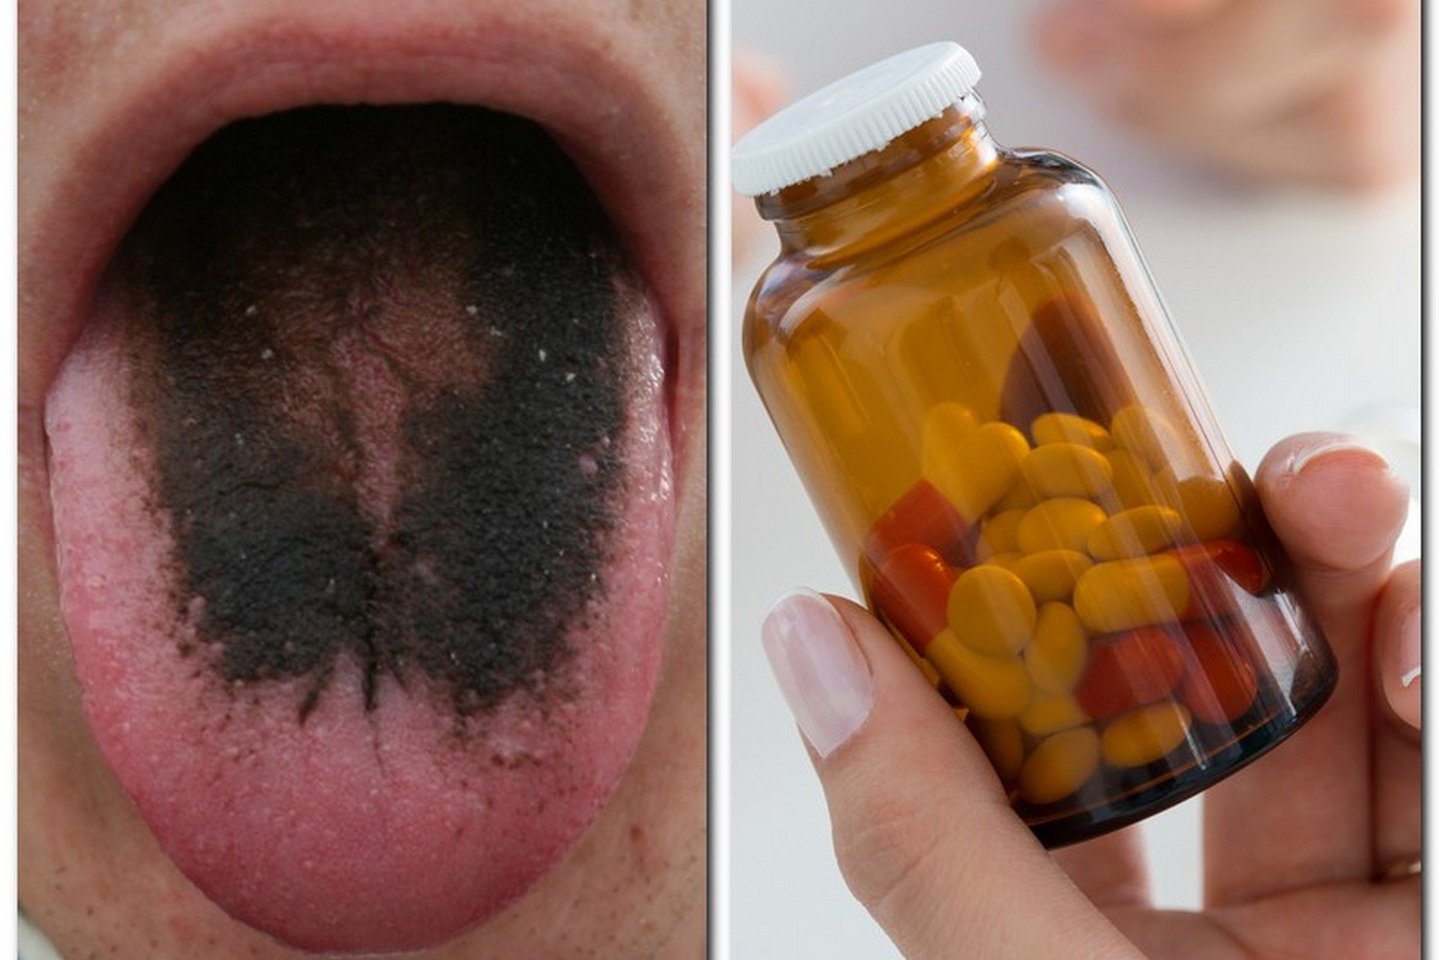  Keistas šalutinis vaistų poveikis vadinamas juodu „plaukuotu“ liežuviu.<br> Wikipedia ir 123rf nuotr. 